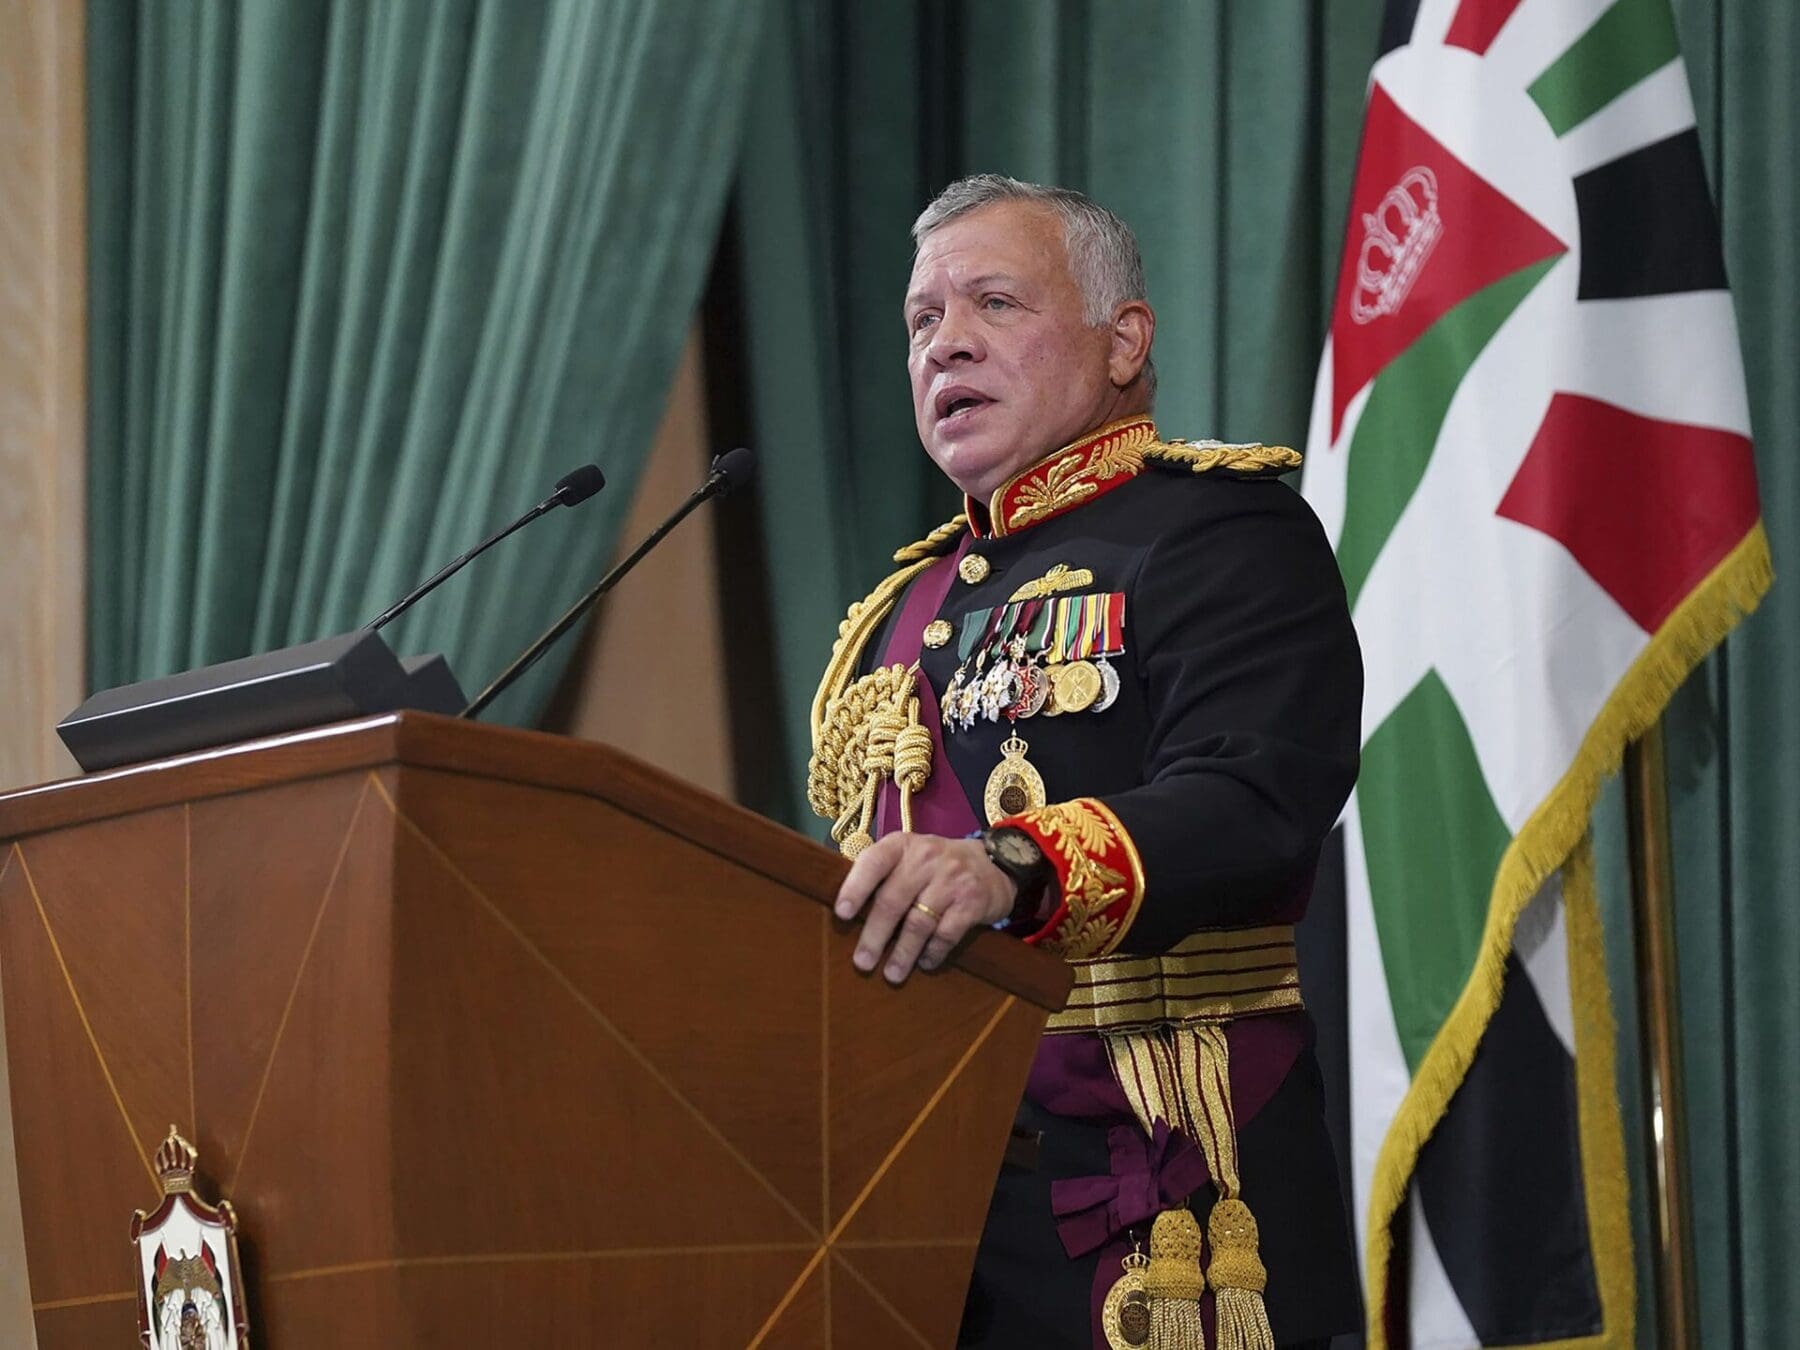 عاجل| ملك الأردن يُعلن عن تمكن نشامى سلاح الجو من إنزال مساعدات جوًا لأهالي غزة